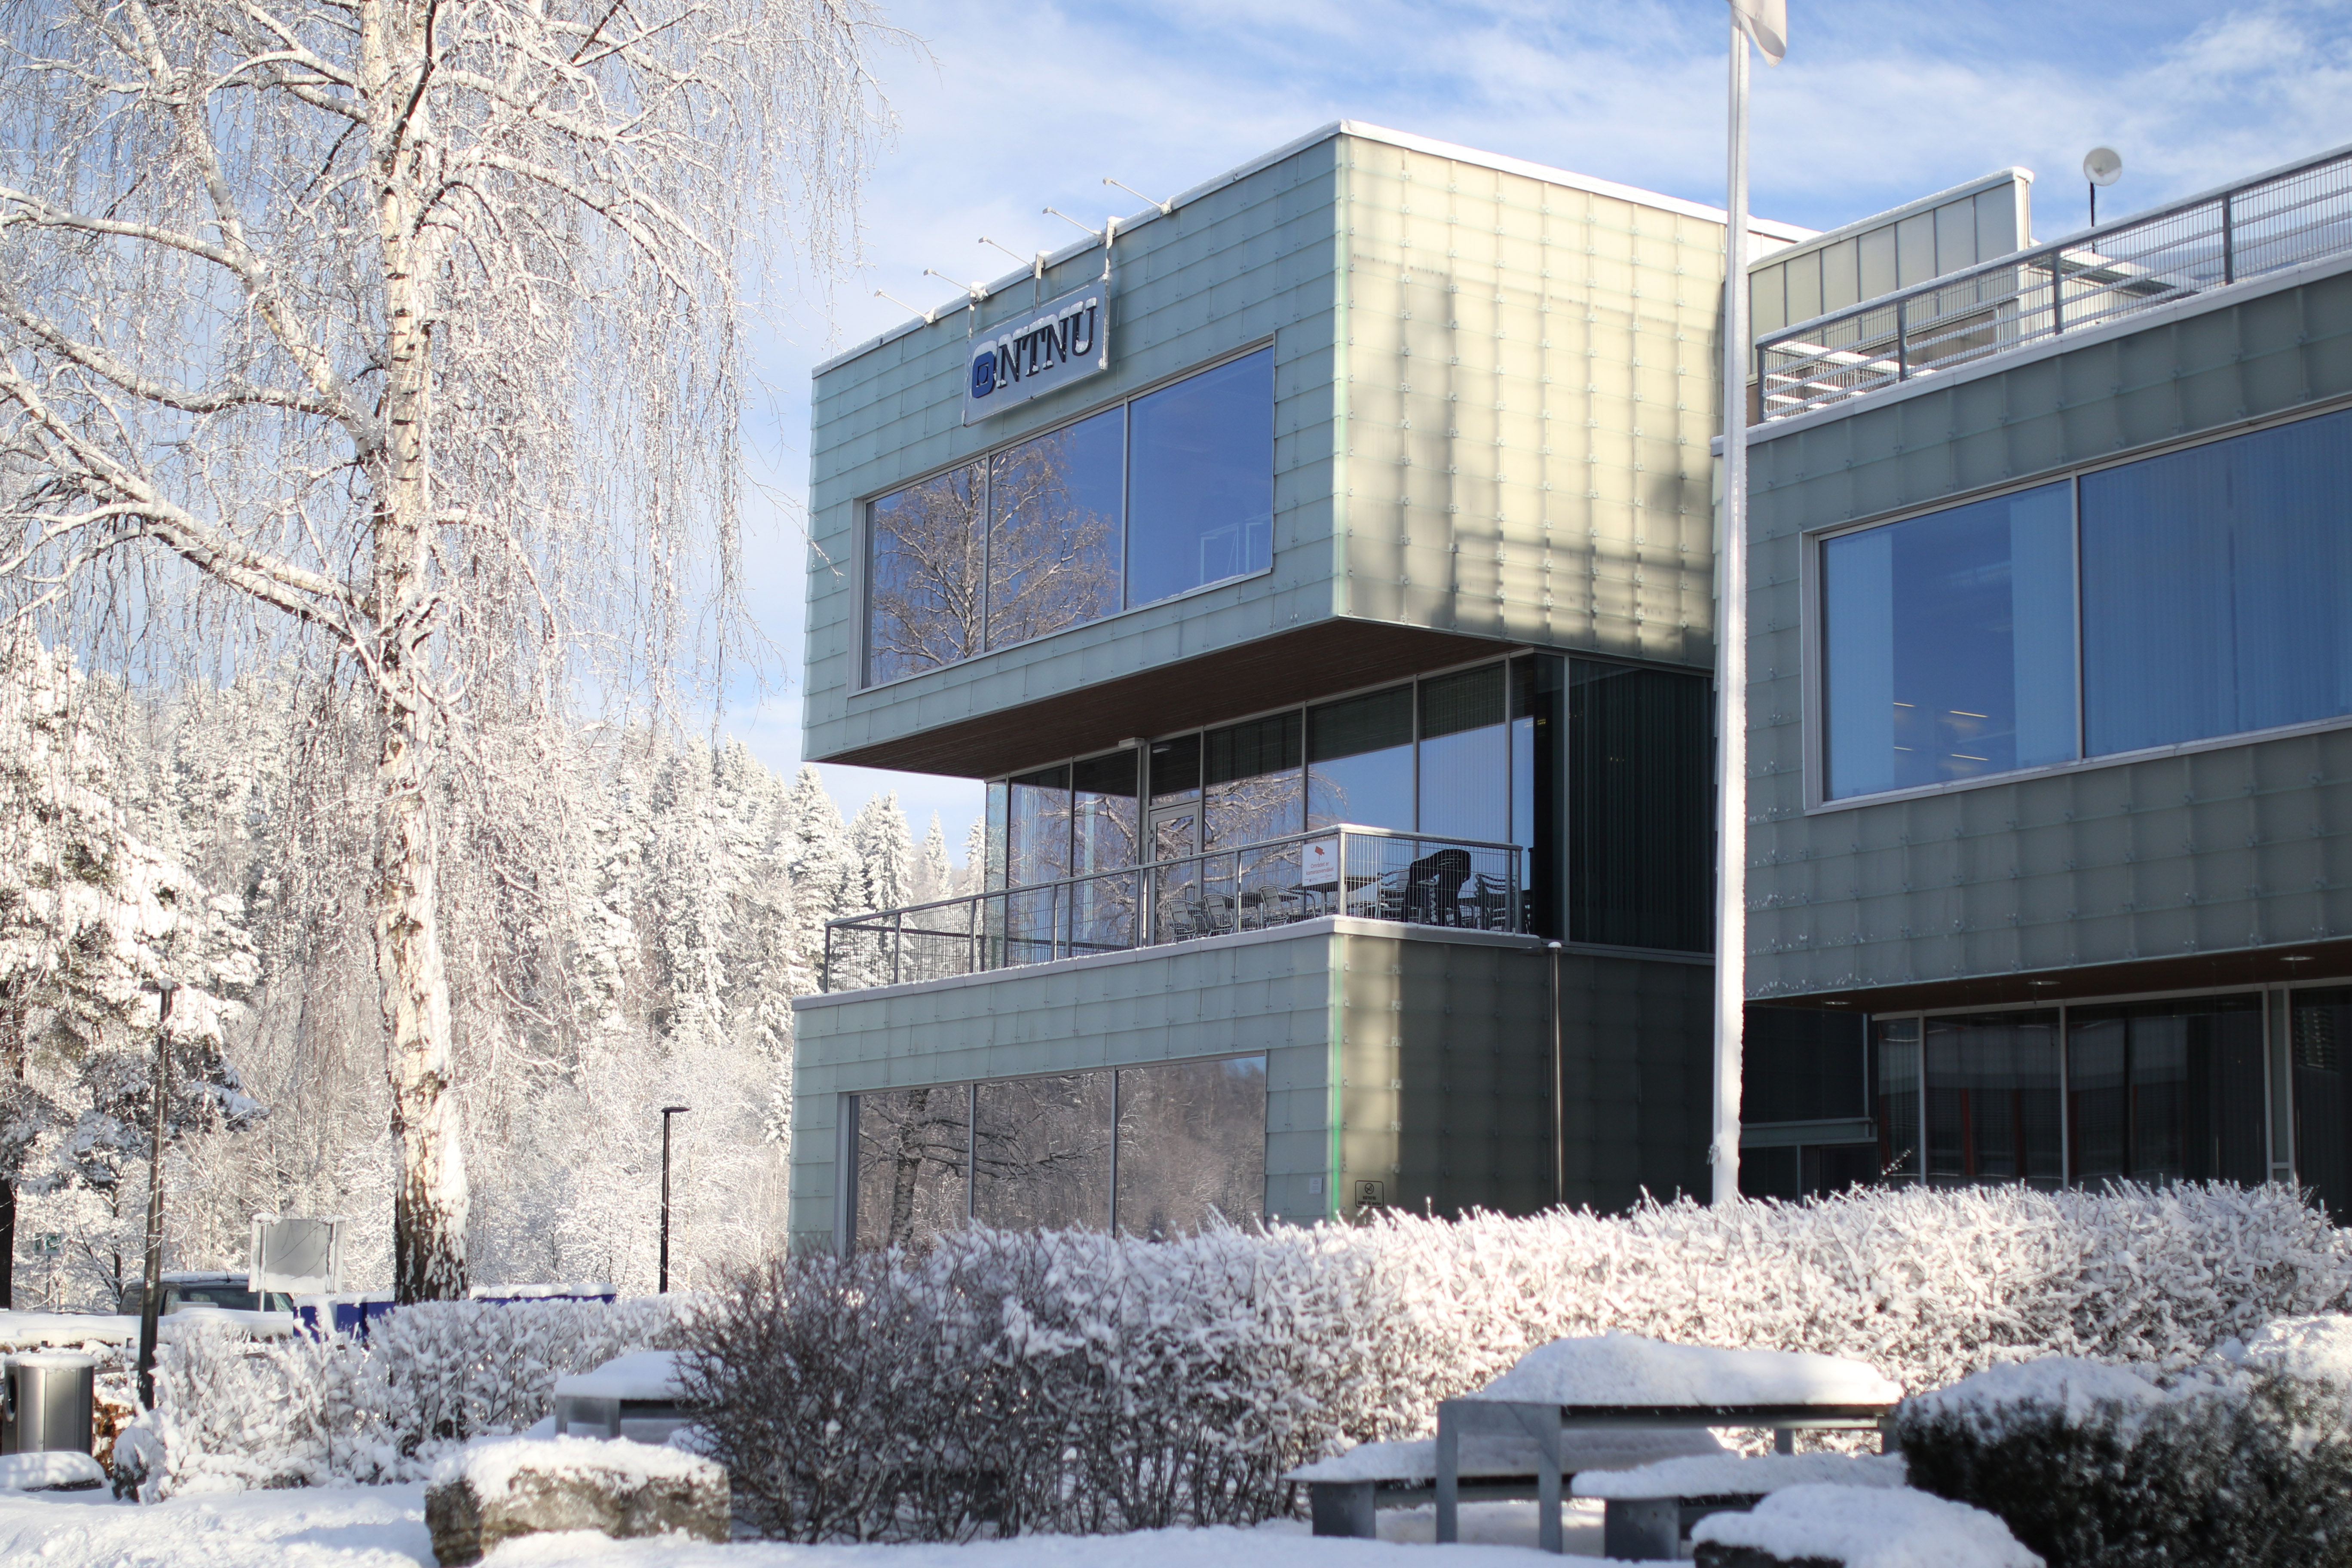 G-bygget på campus Gjøvik. Snø på bakken, i trær og på busker